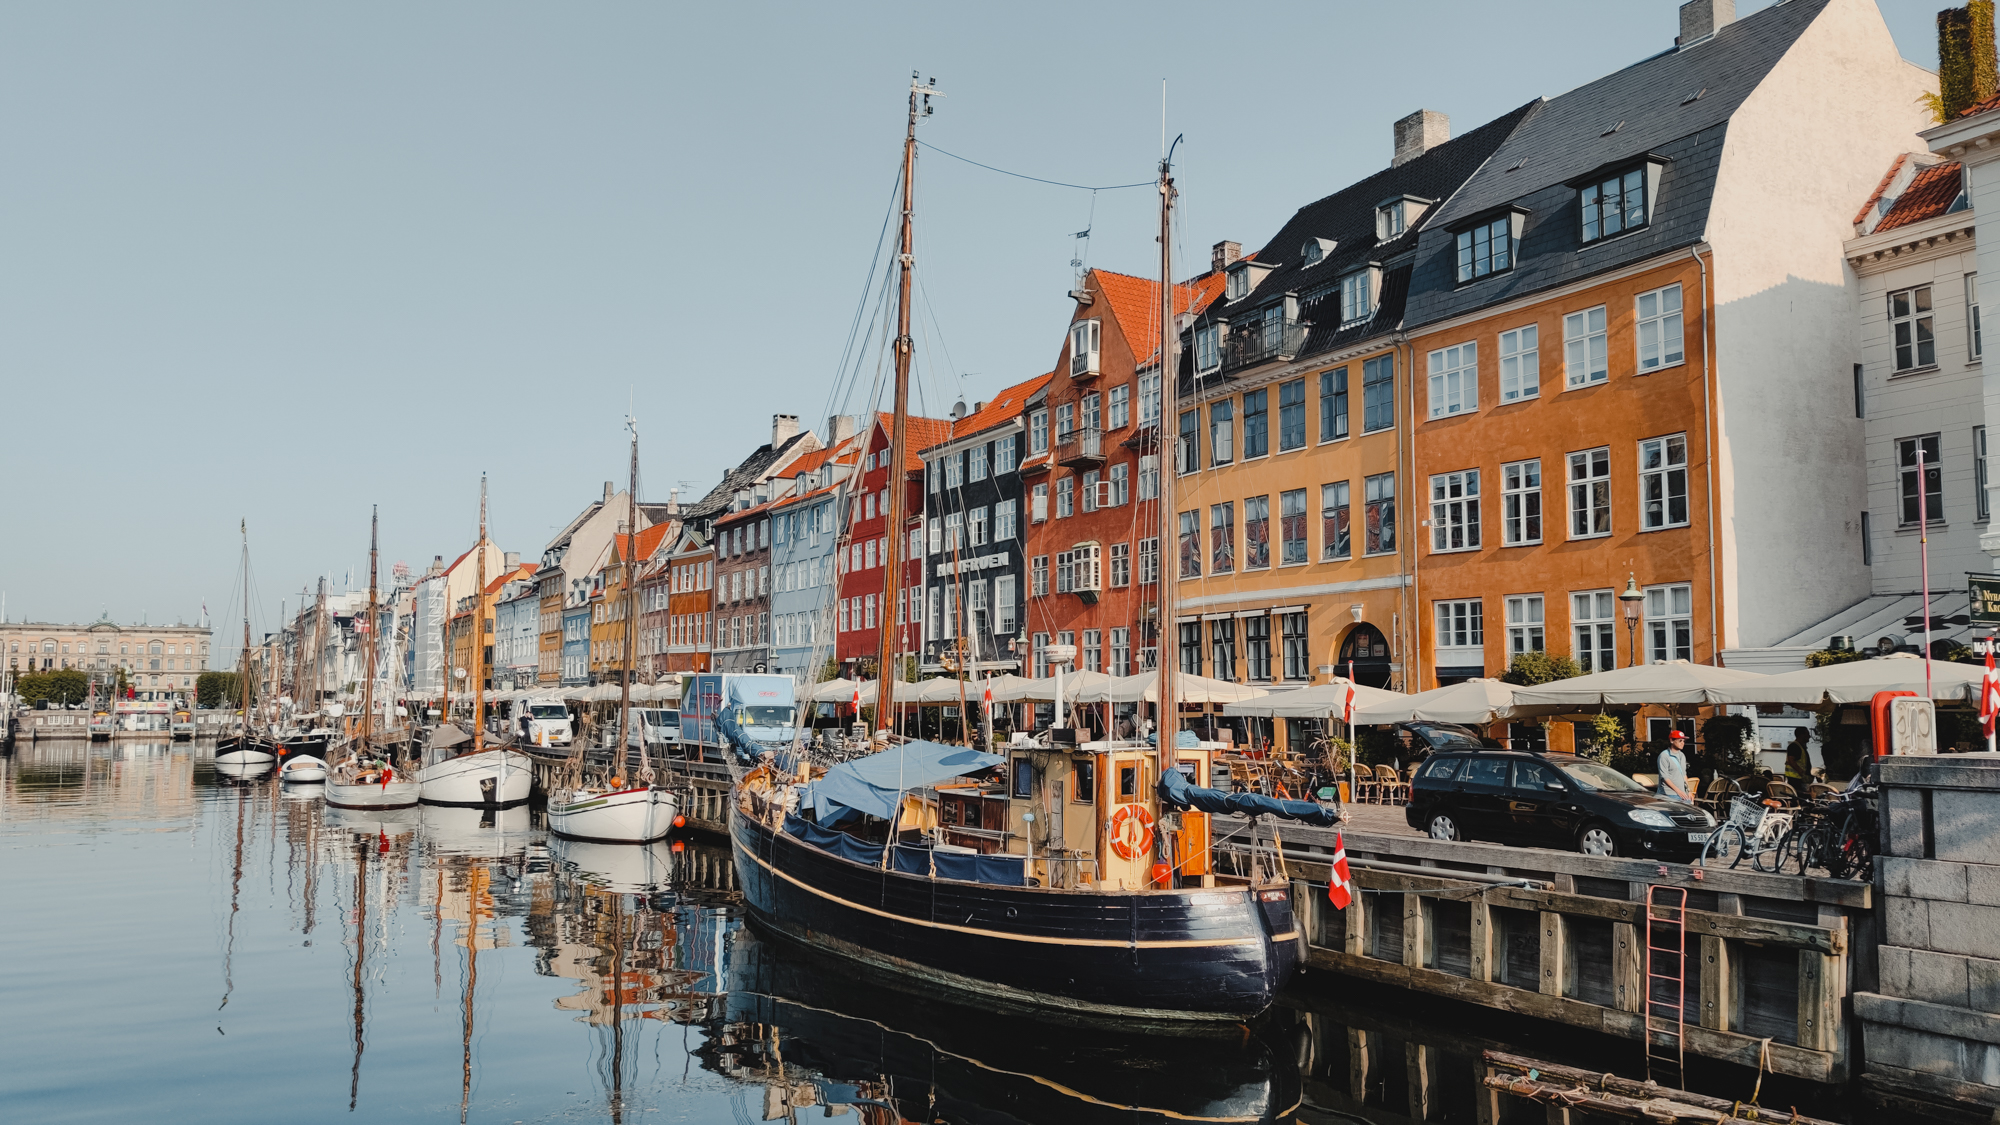 15 free attractions to visit in Copenhagen